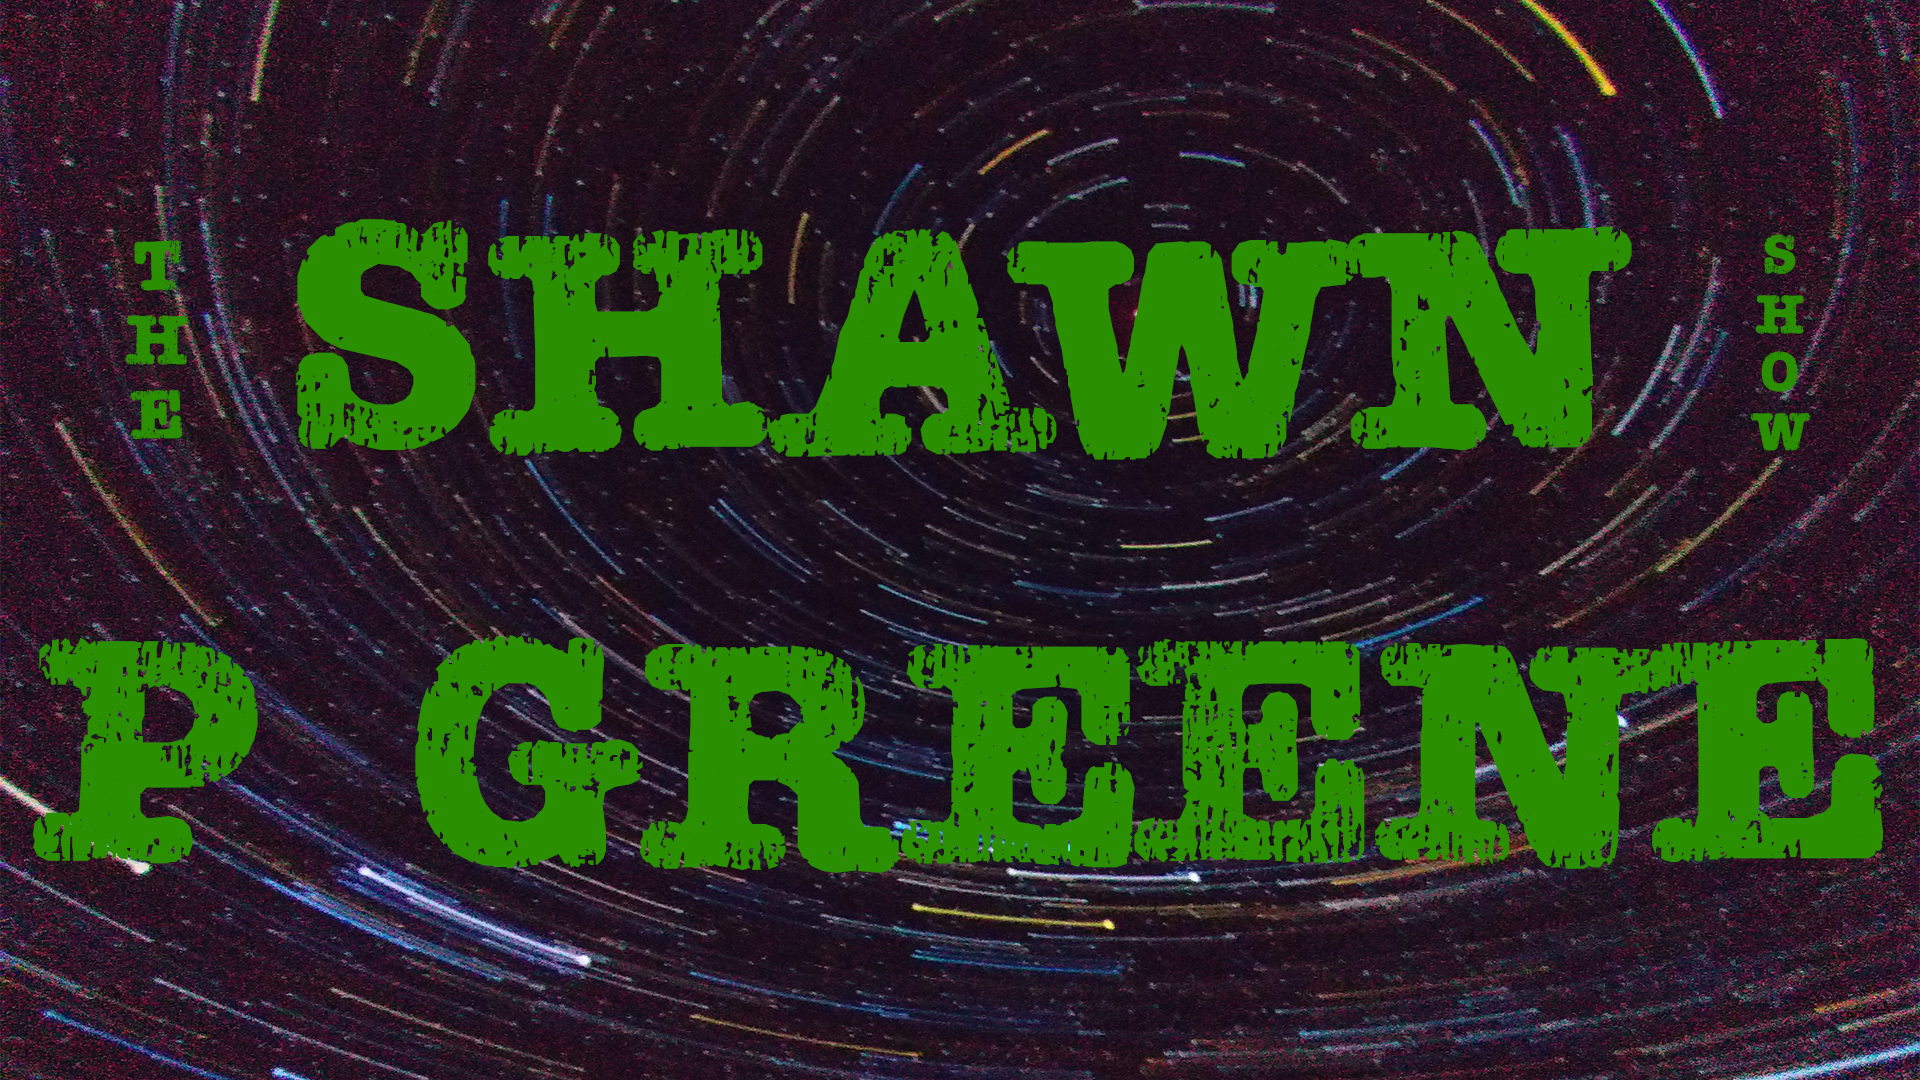 The Shawn P Greene Show